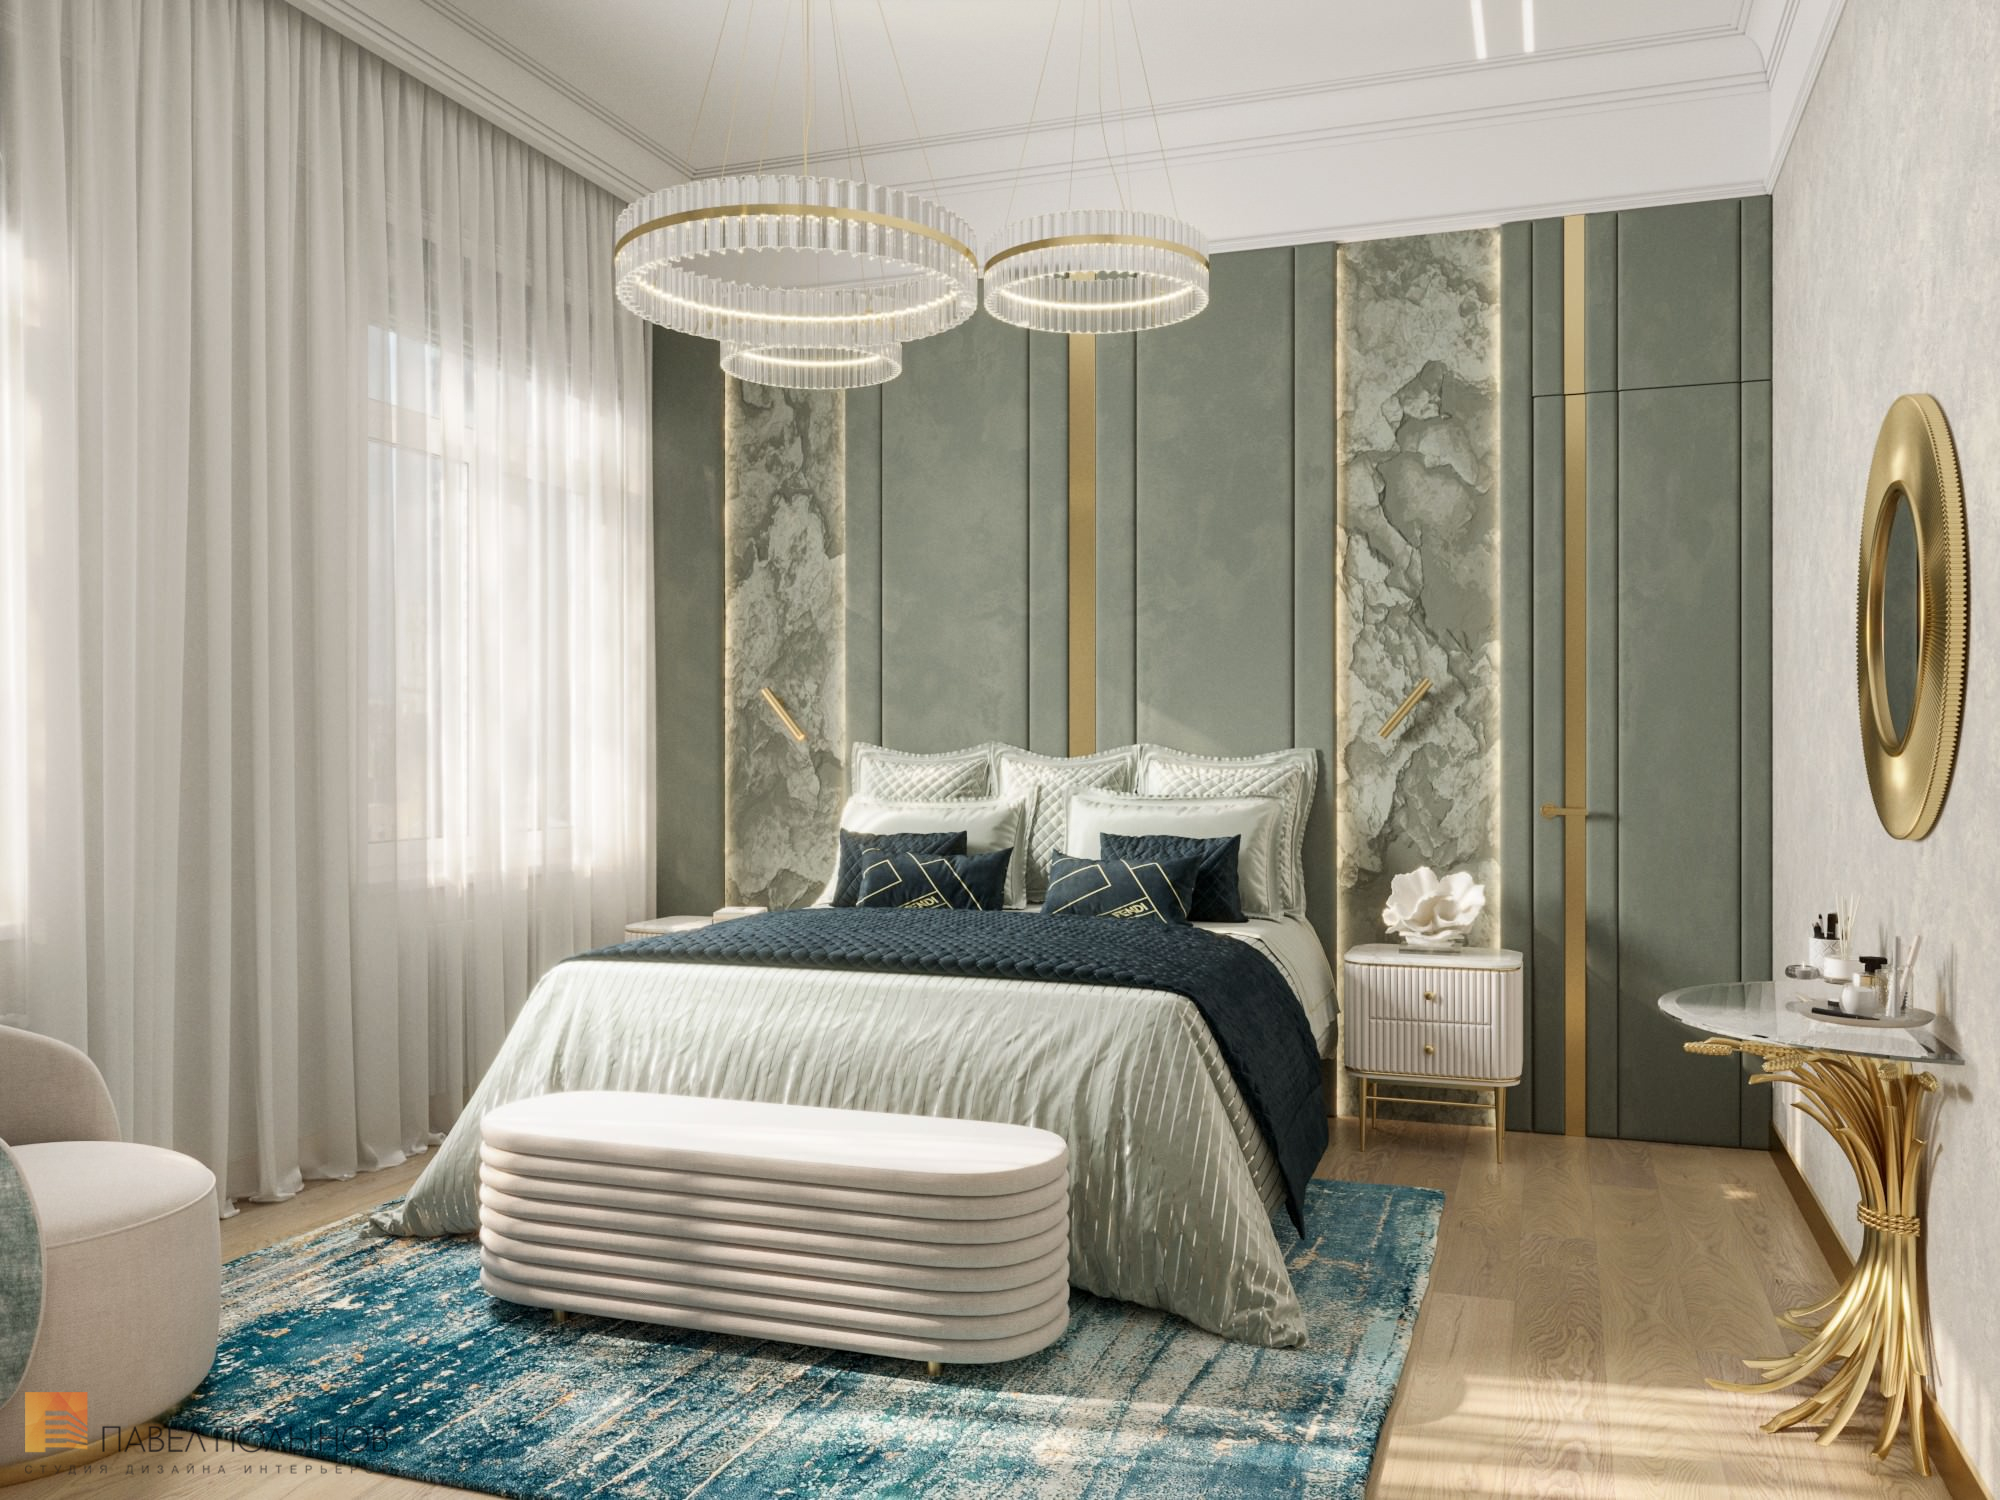 Фото дизайн спальни из проекта «Дизайн интерьера квартиры в стиле Ар-деко, 100 кв.м.»